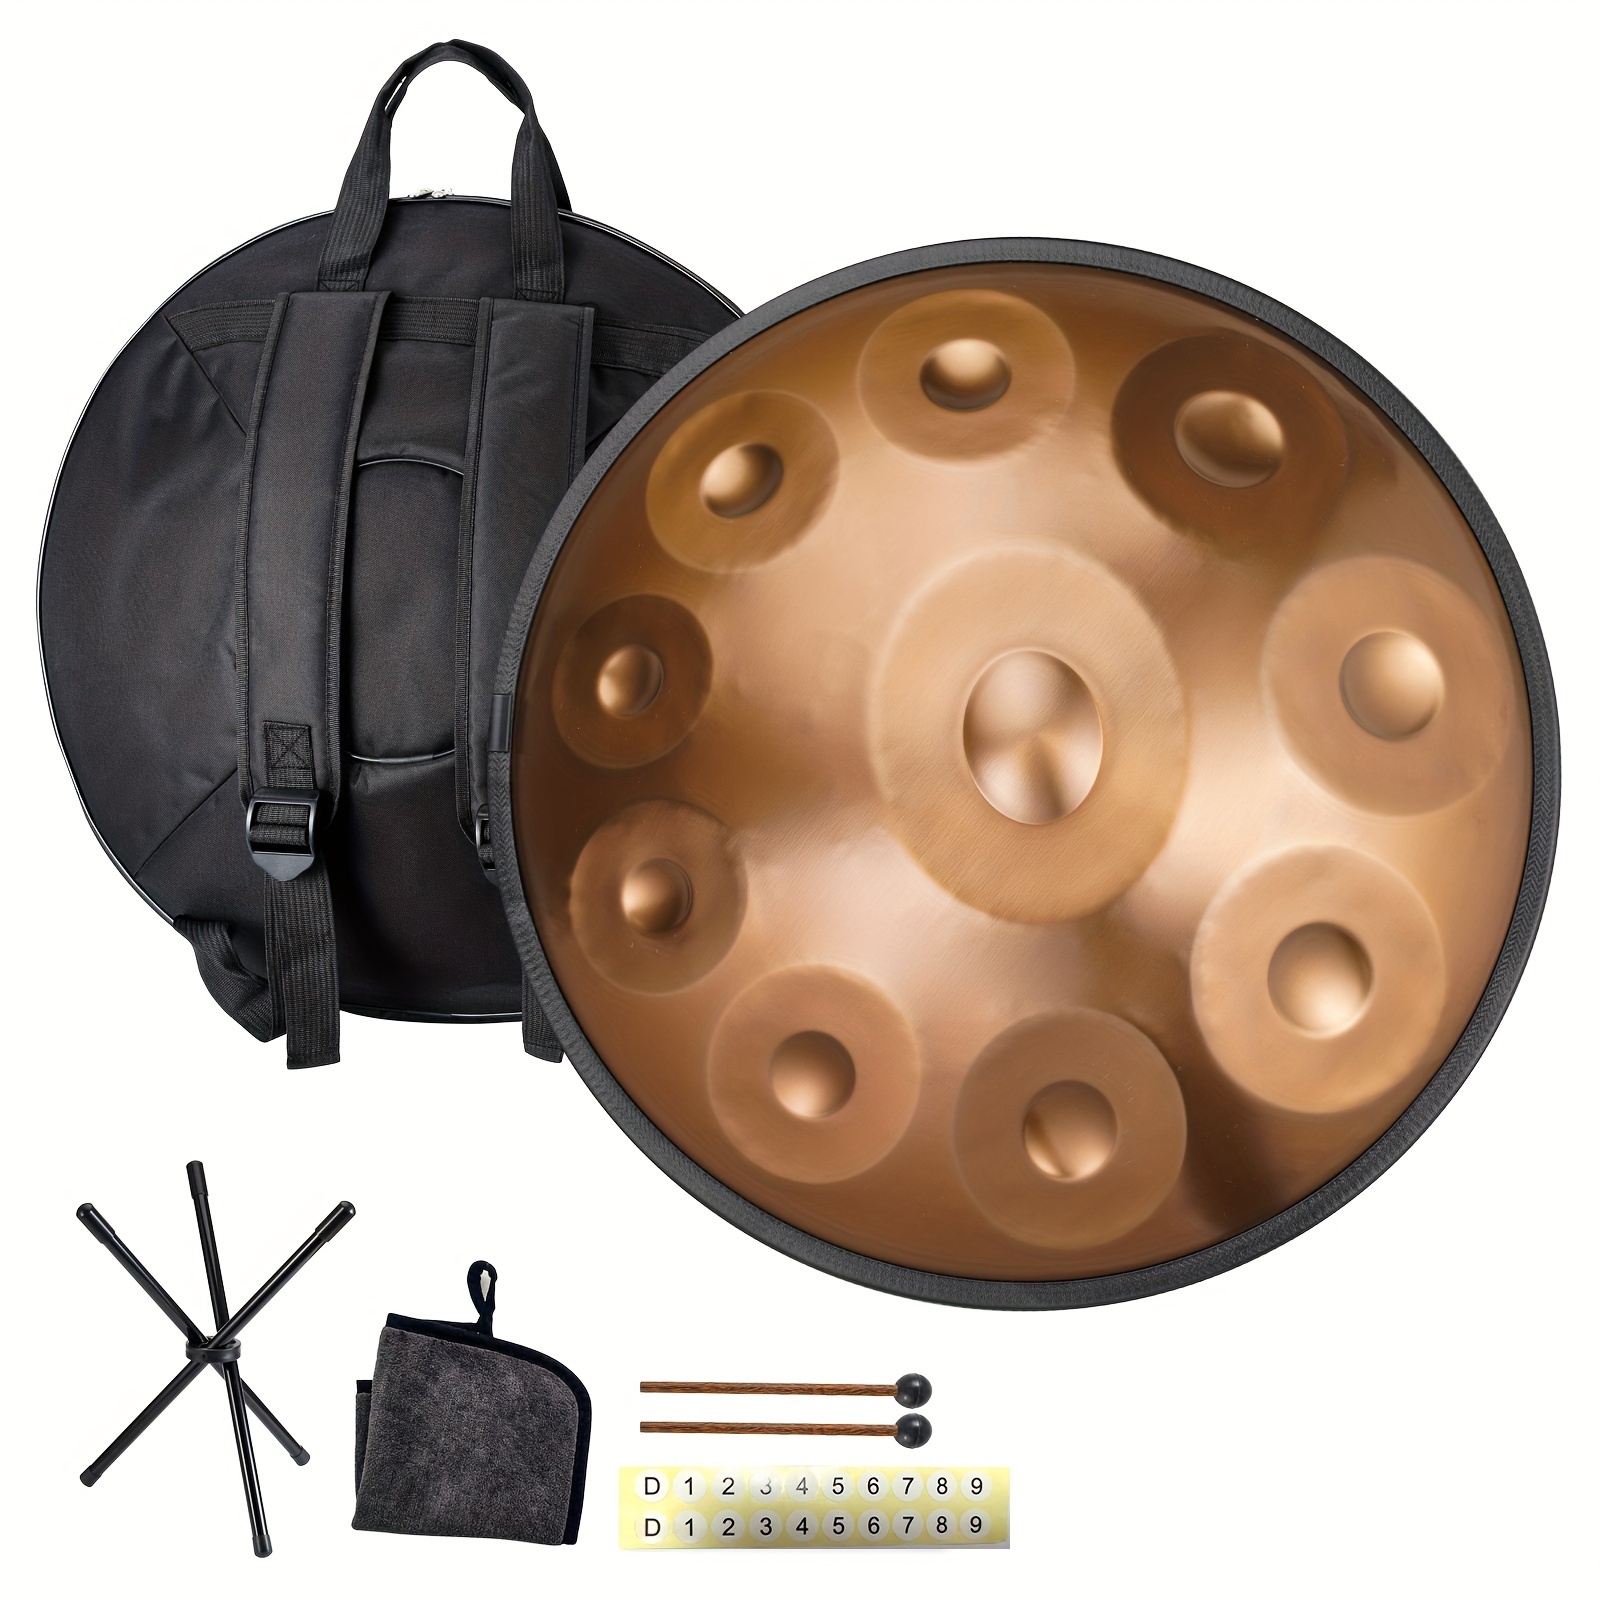 Handpans,Hang Drum,22 Inch Handpan Drum,Handpan Steel Drum,Space Drum –